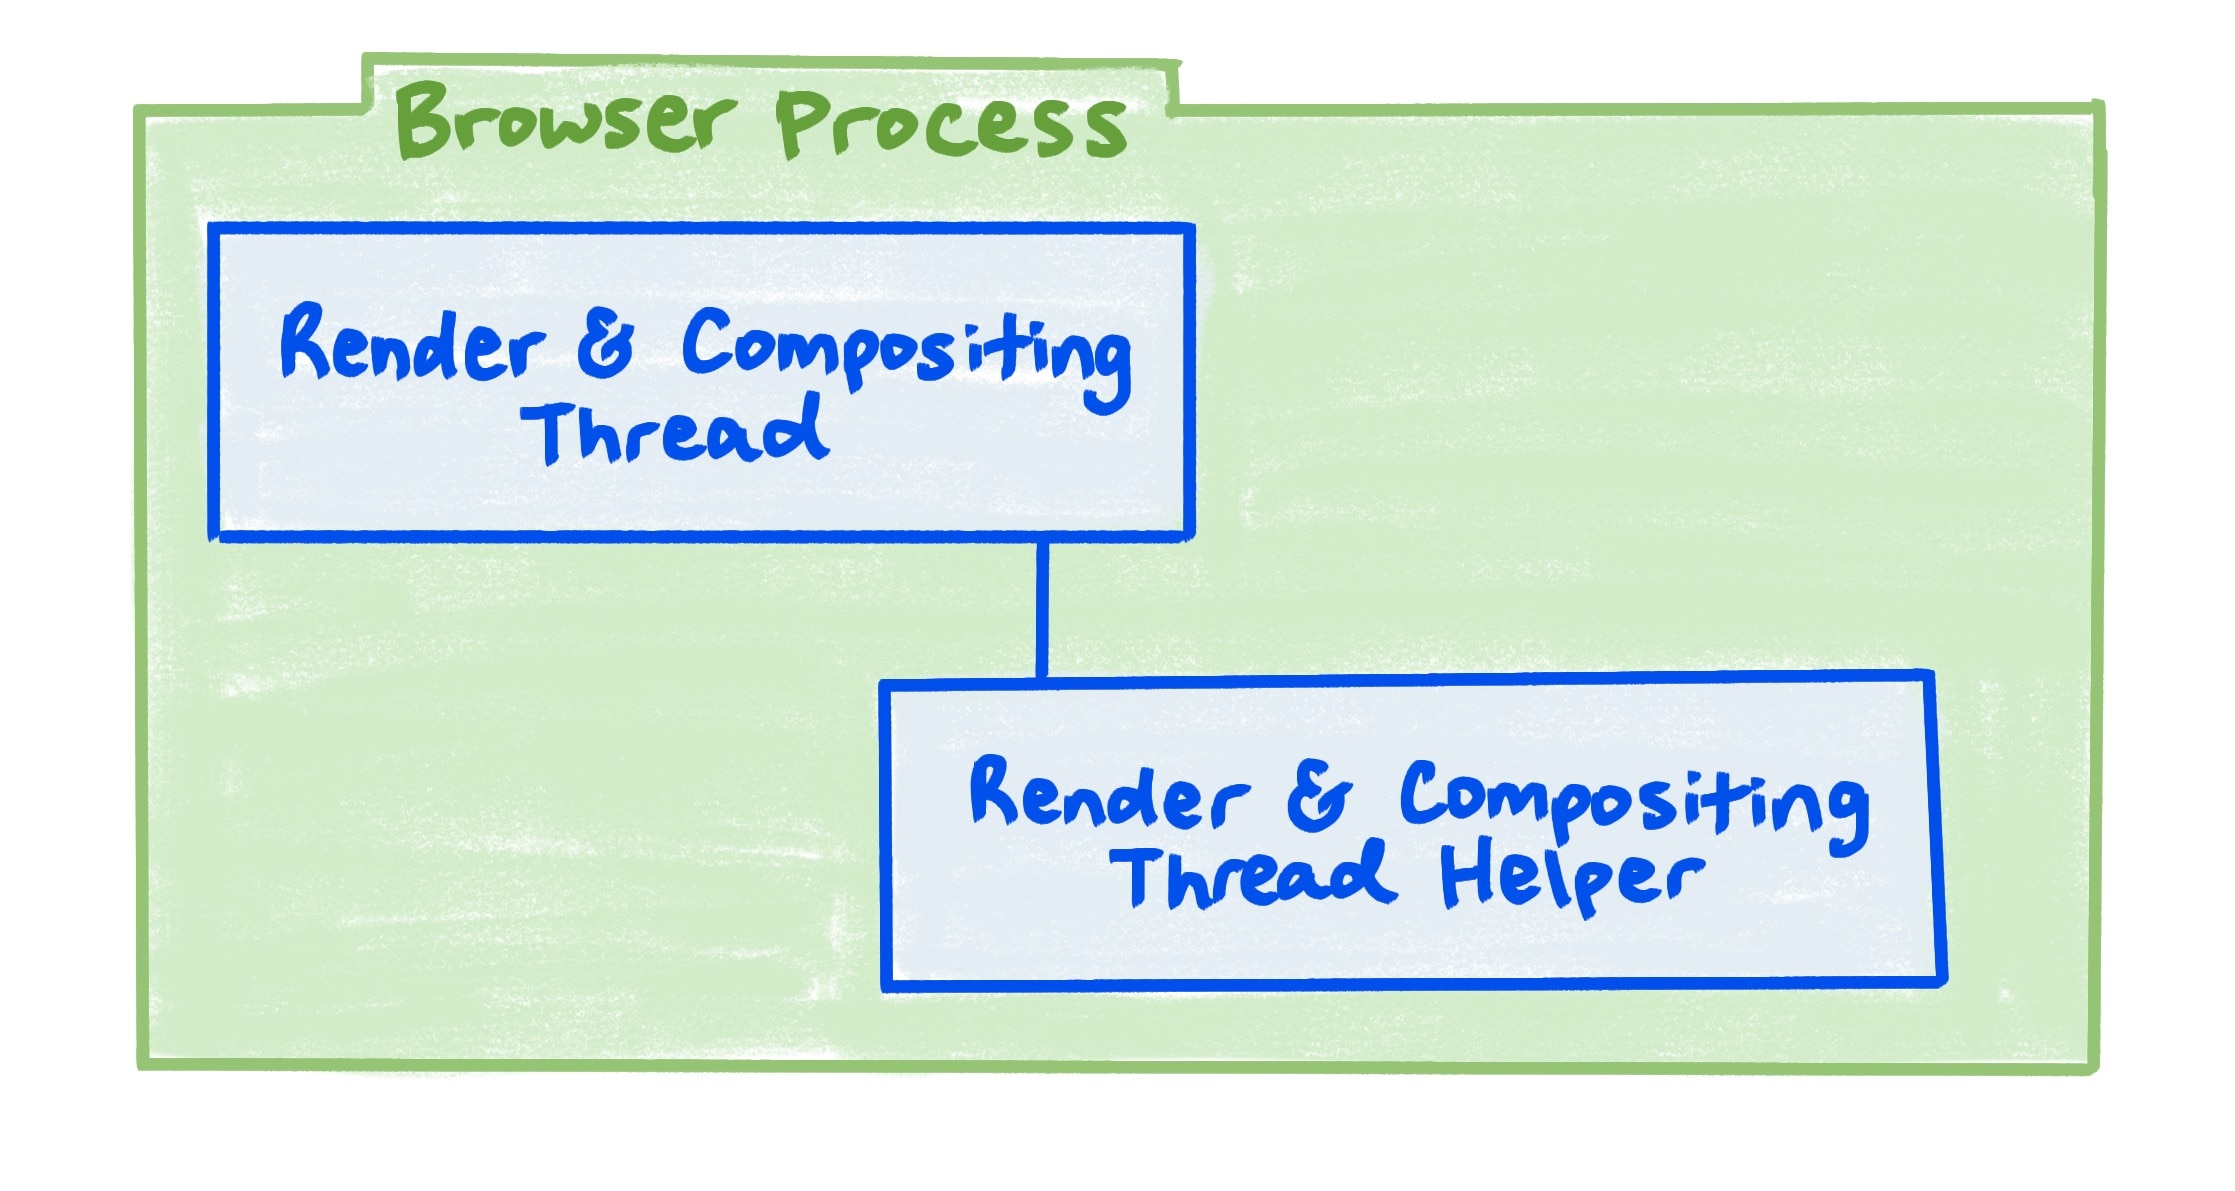 렌더링 스레드와 합성 스레드, 렌더링 및 합성 스레드 도우미 간의 관계를 보여주는 브라우저 프로세스 다이어그램